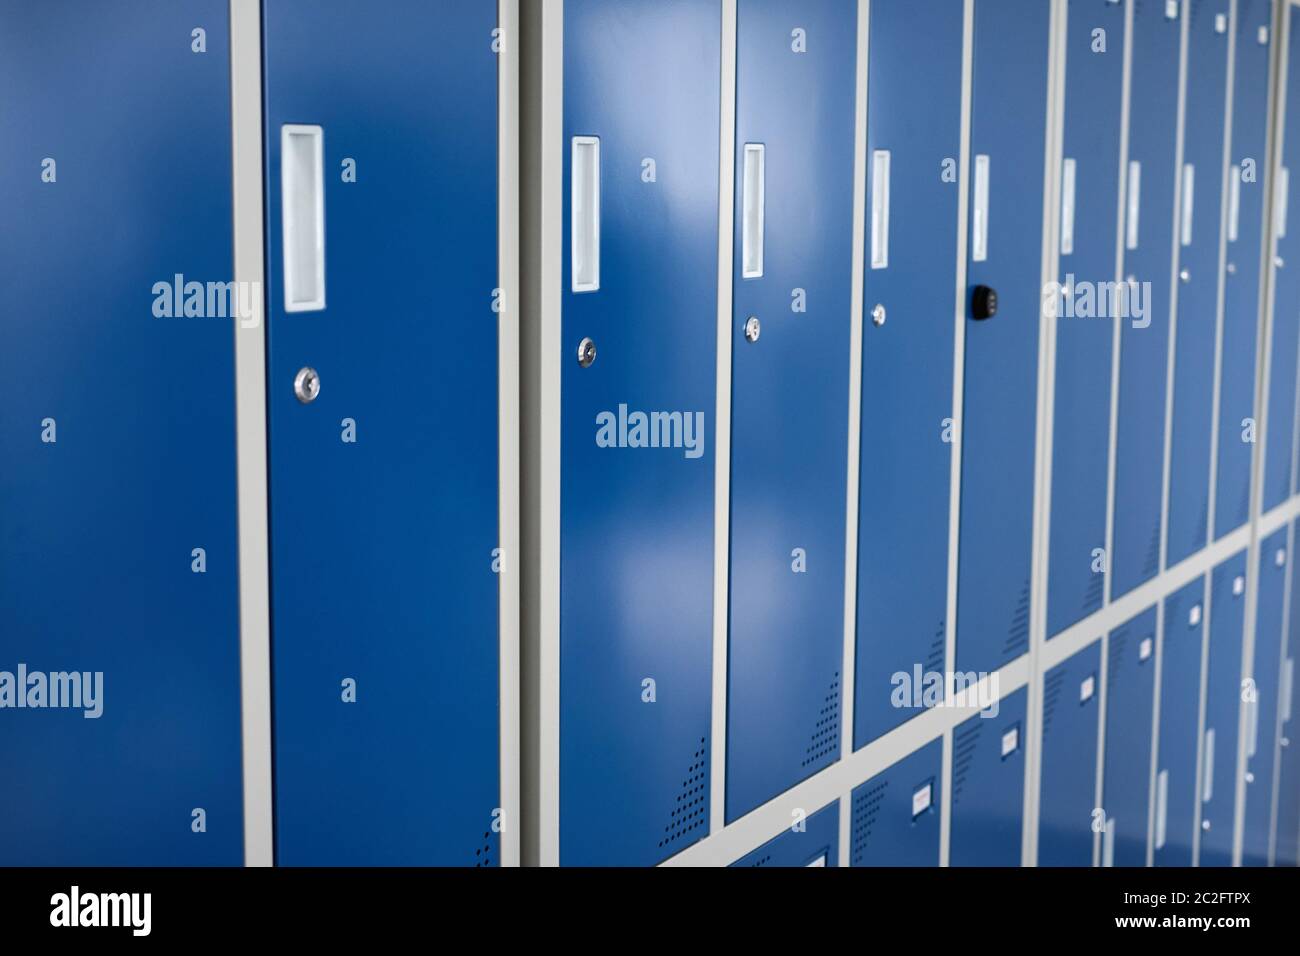 Gros plan de casiers bleus dans une rangée pour l'utilisation de stockage individuel et l'intimité dans les vestiaires Banque D'Images